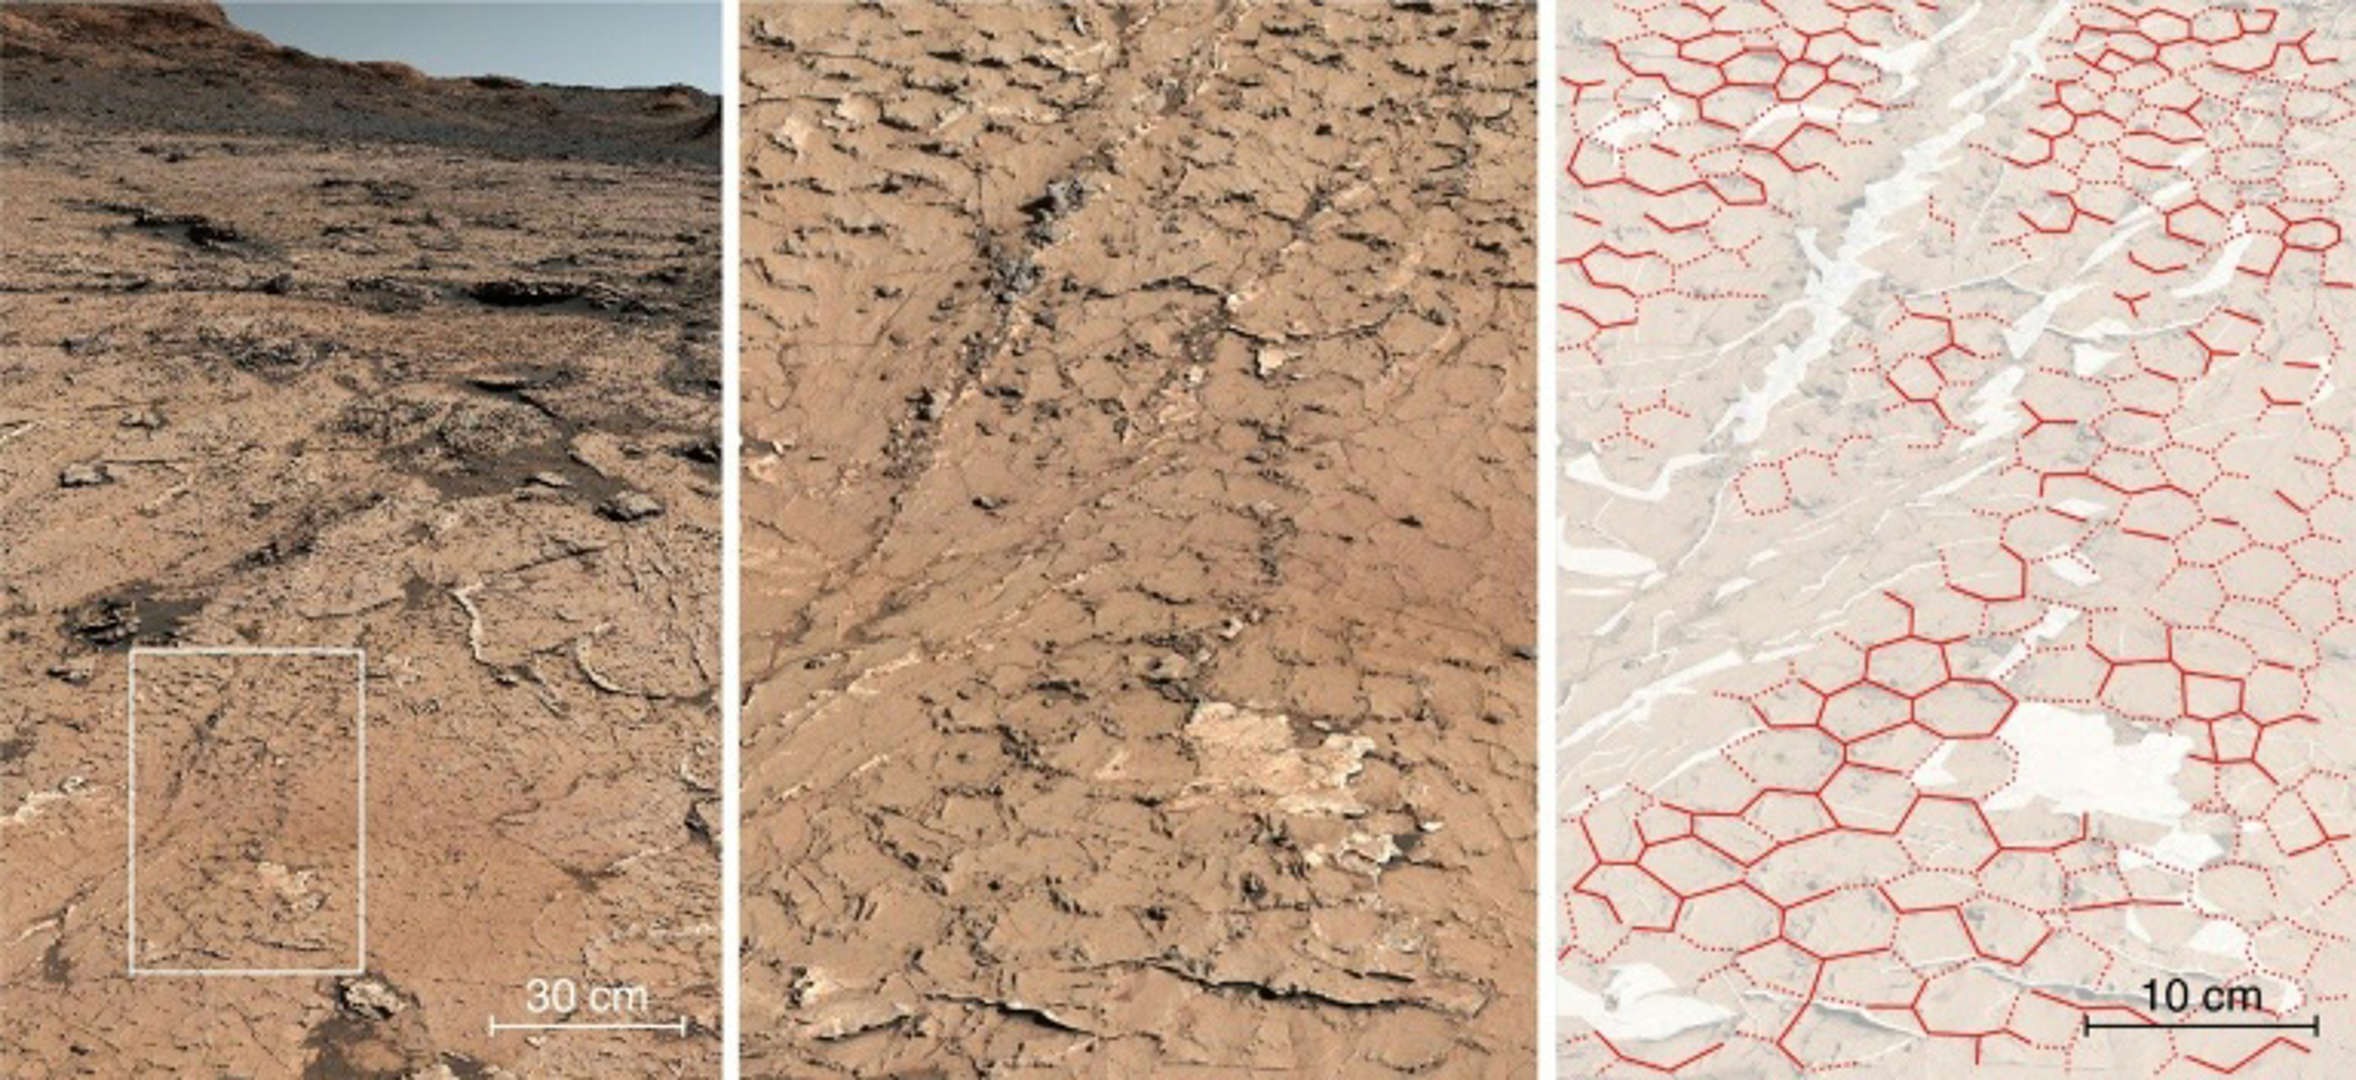 Узоры в кратере Гейл интерпретируются как доказательство растрескивания грязи во время высыхания